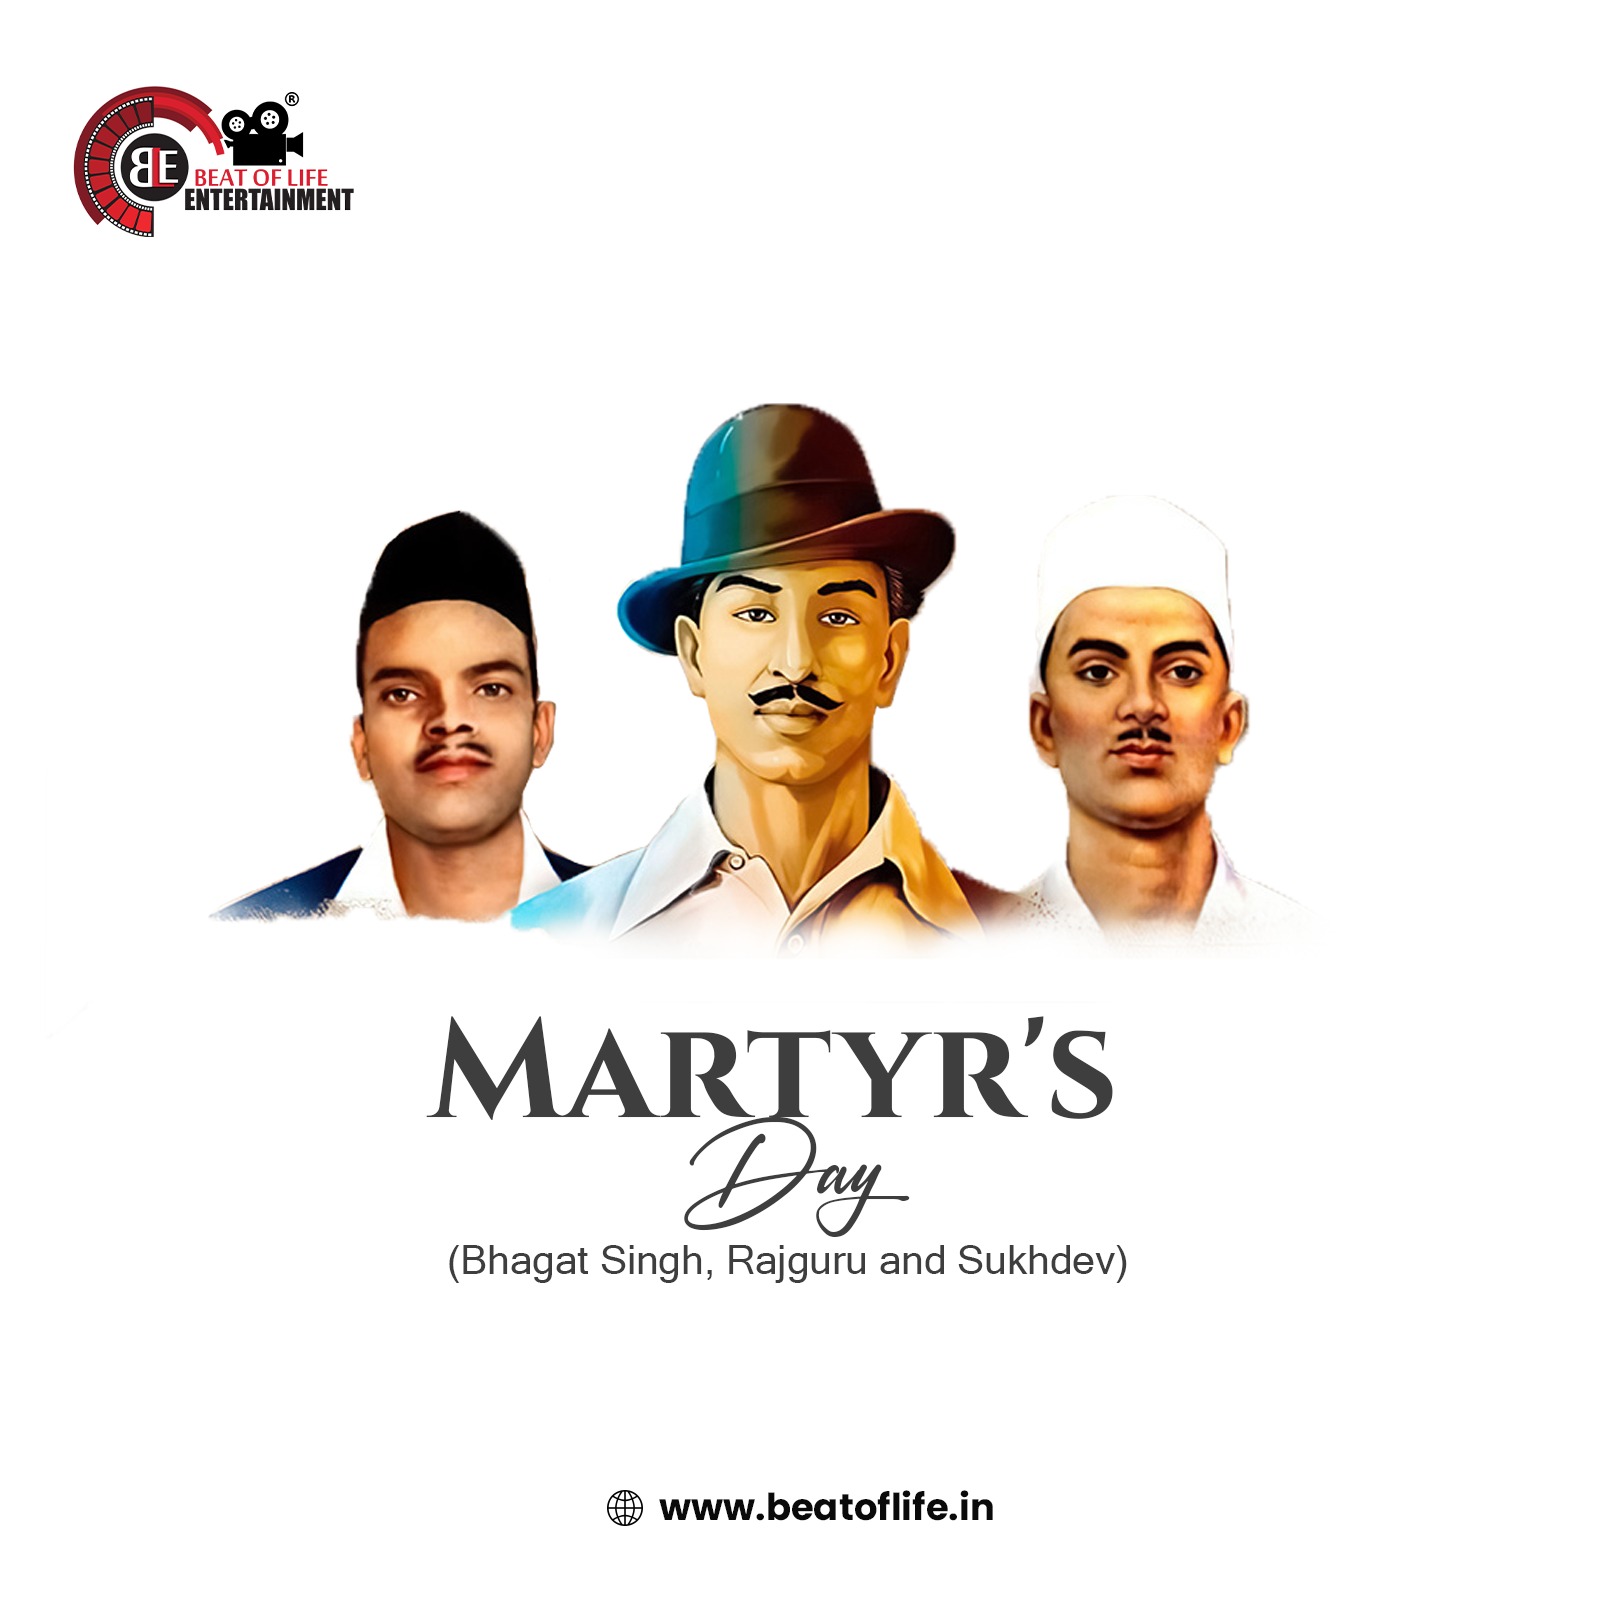 Martyr's Day (Bhagat Singh, Rajguru and Sukhdev)